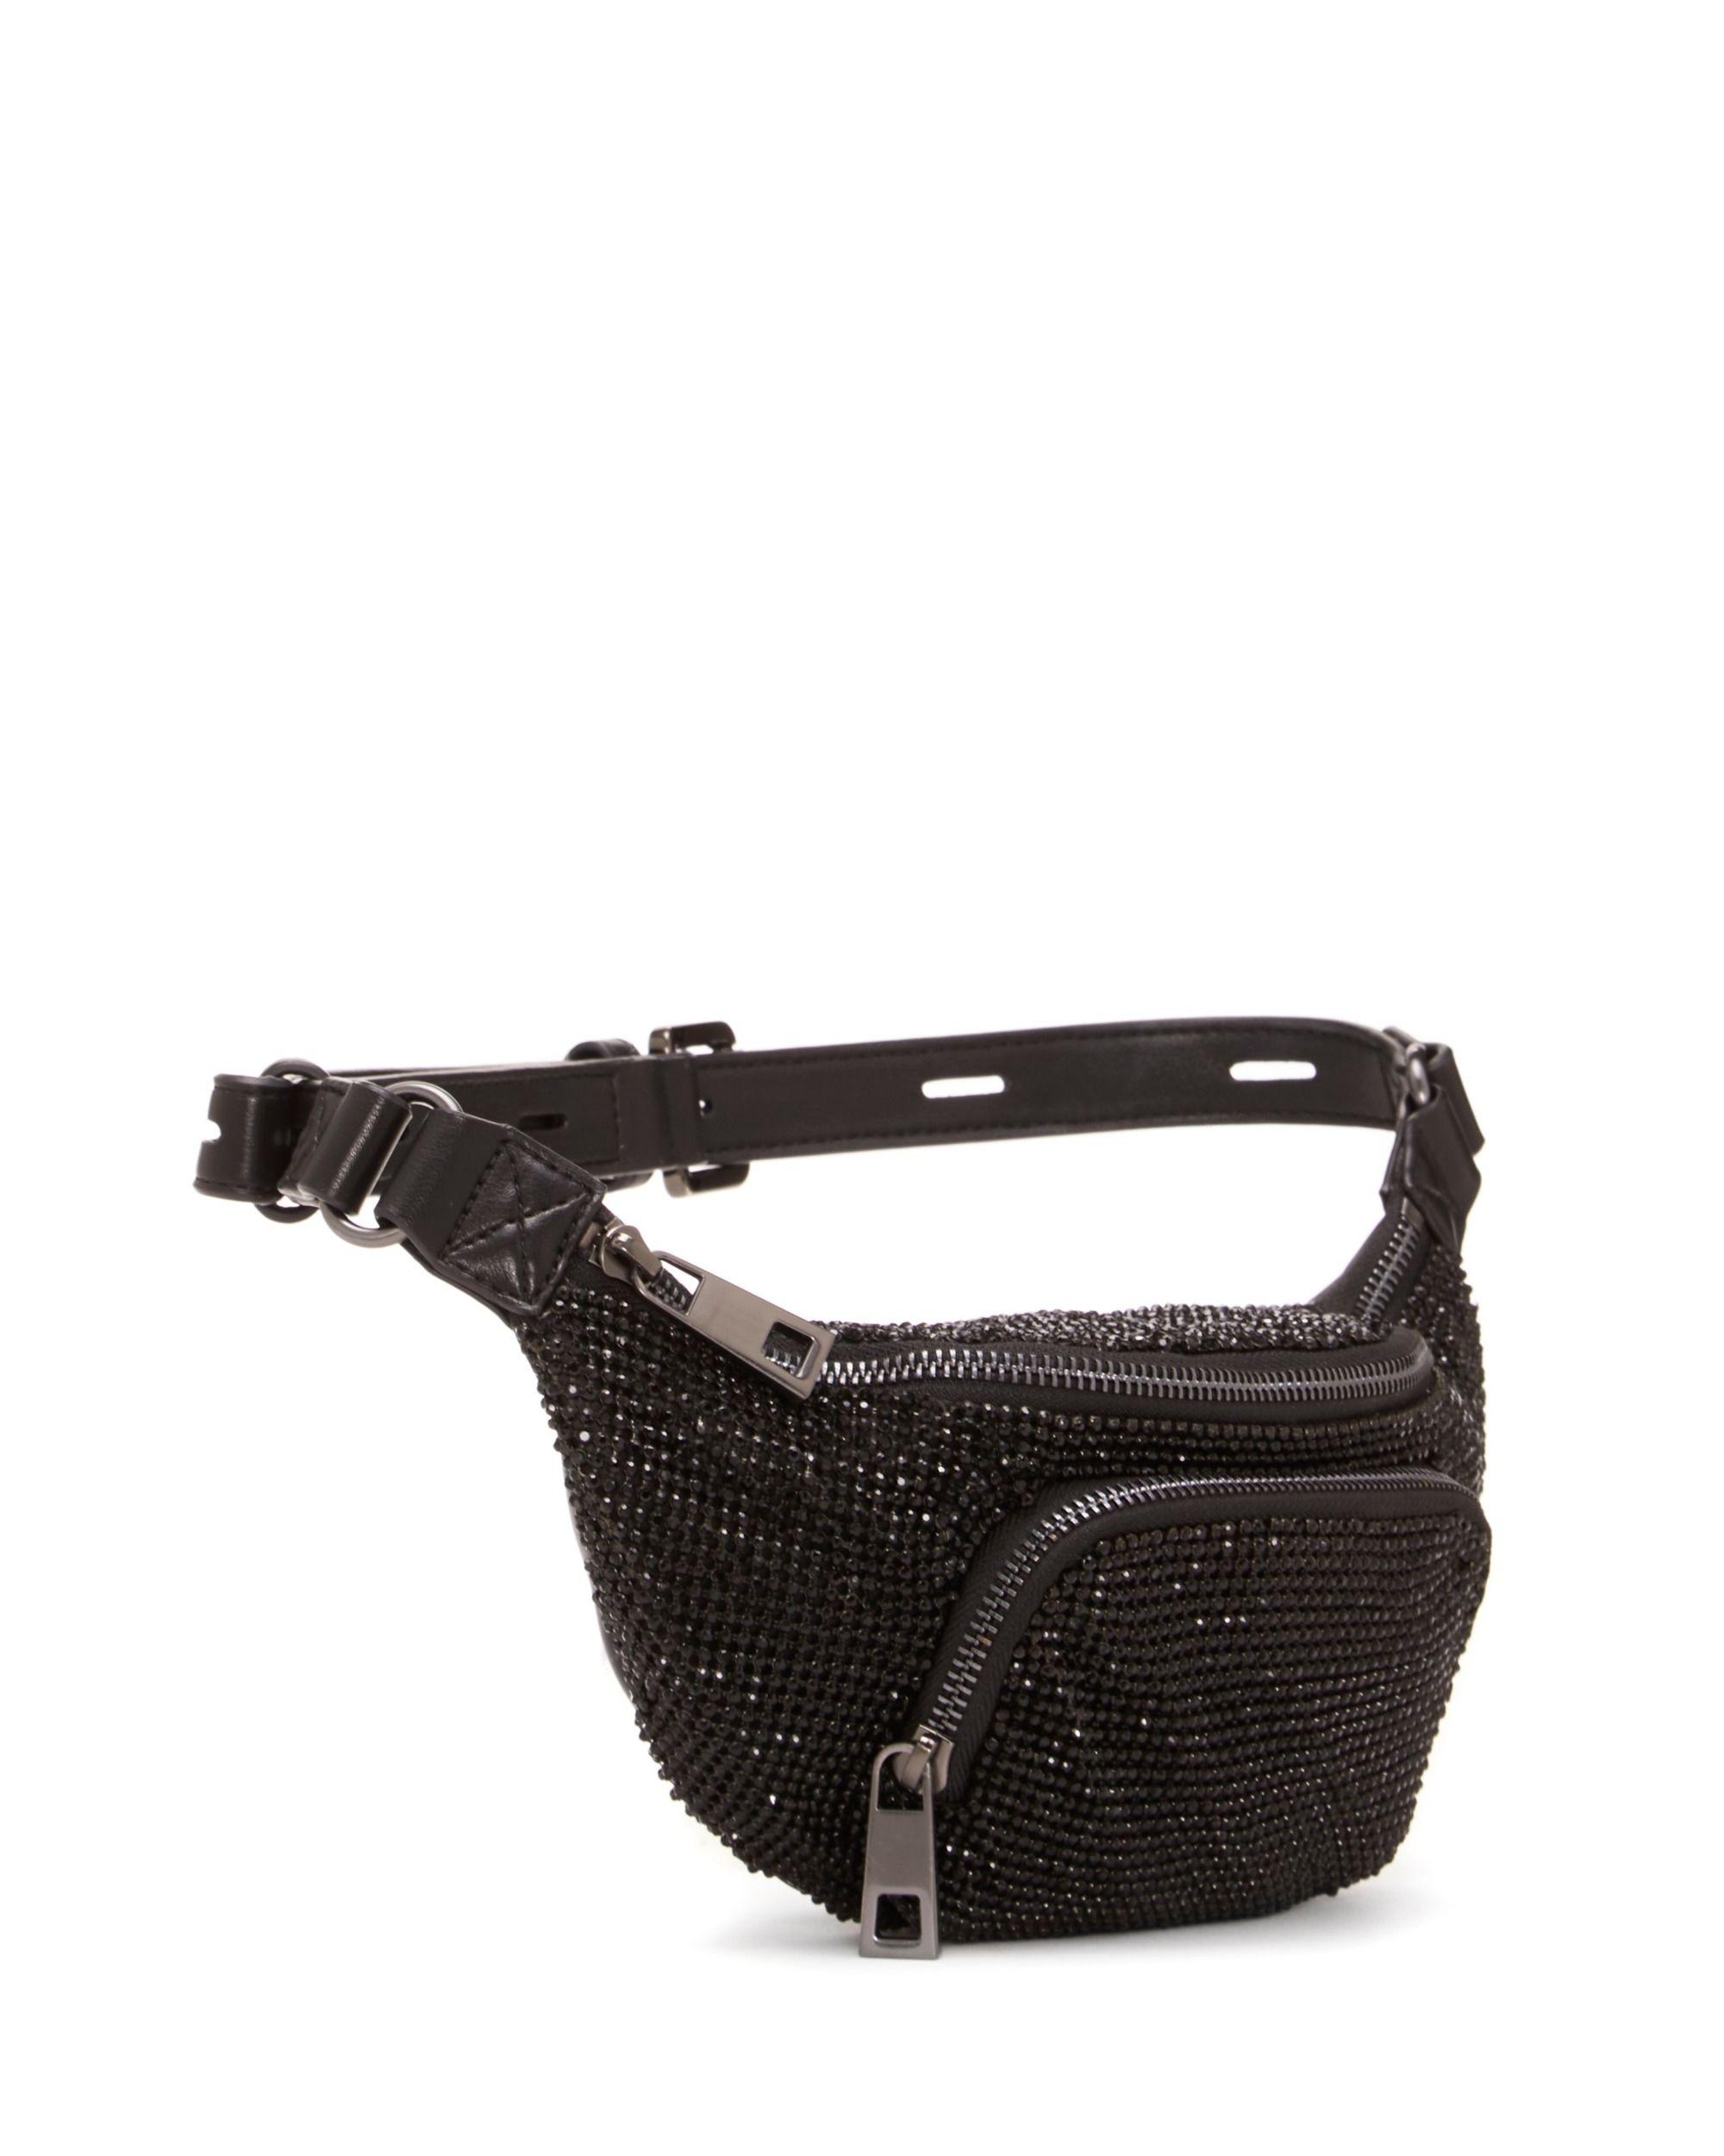 Vince Camuto Synthetic Lev – Embellished Belt Bag1 in Nero (Black) - Lyst